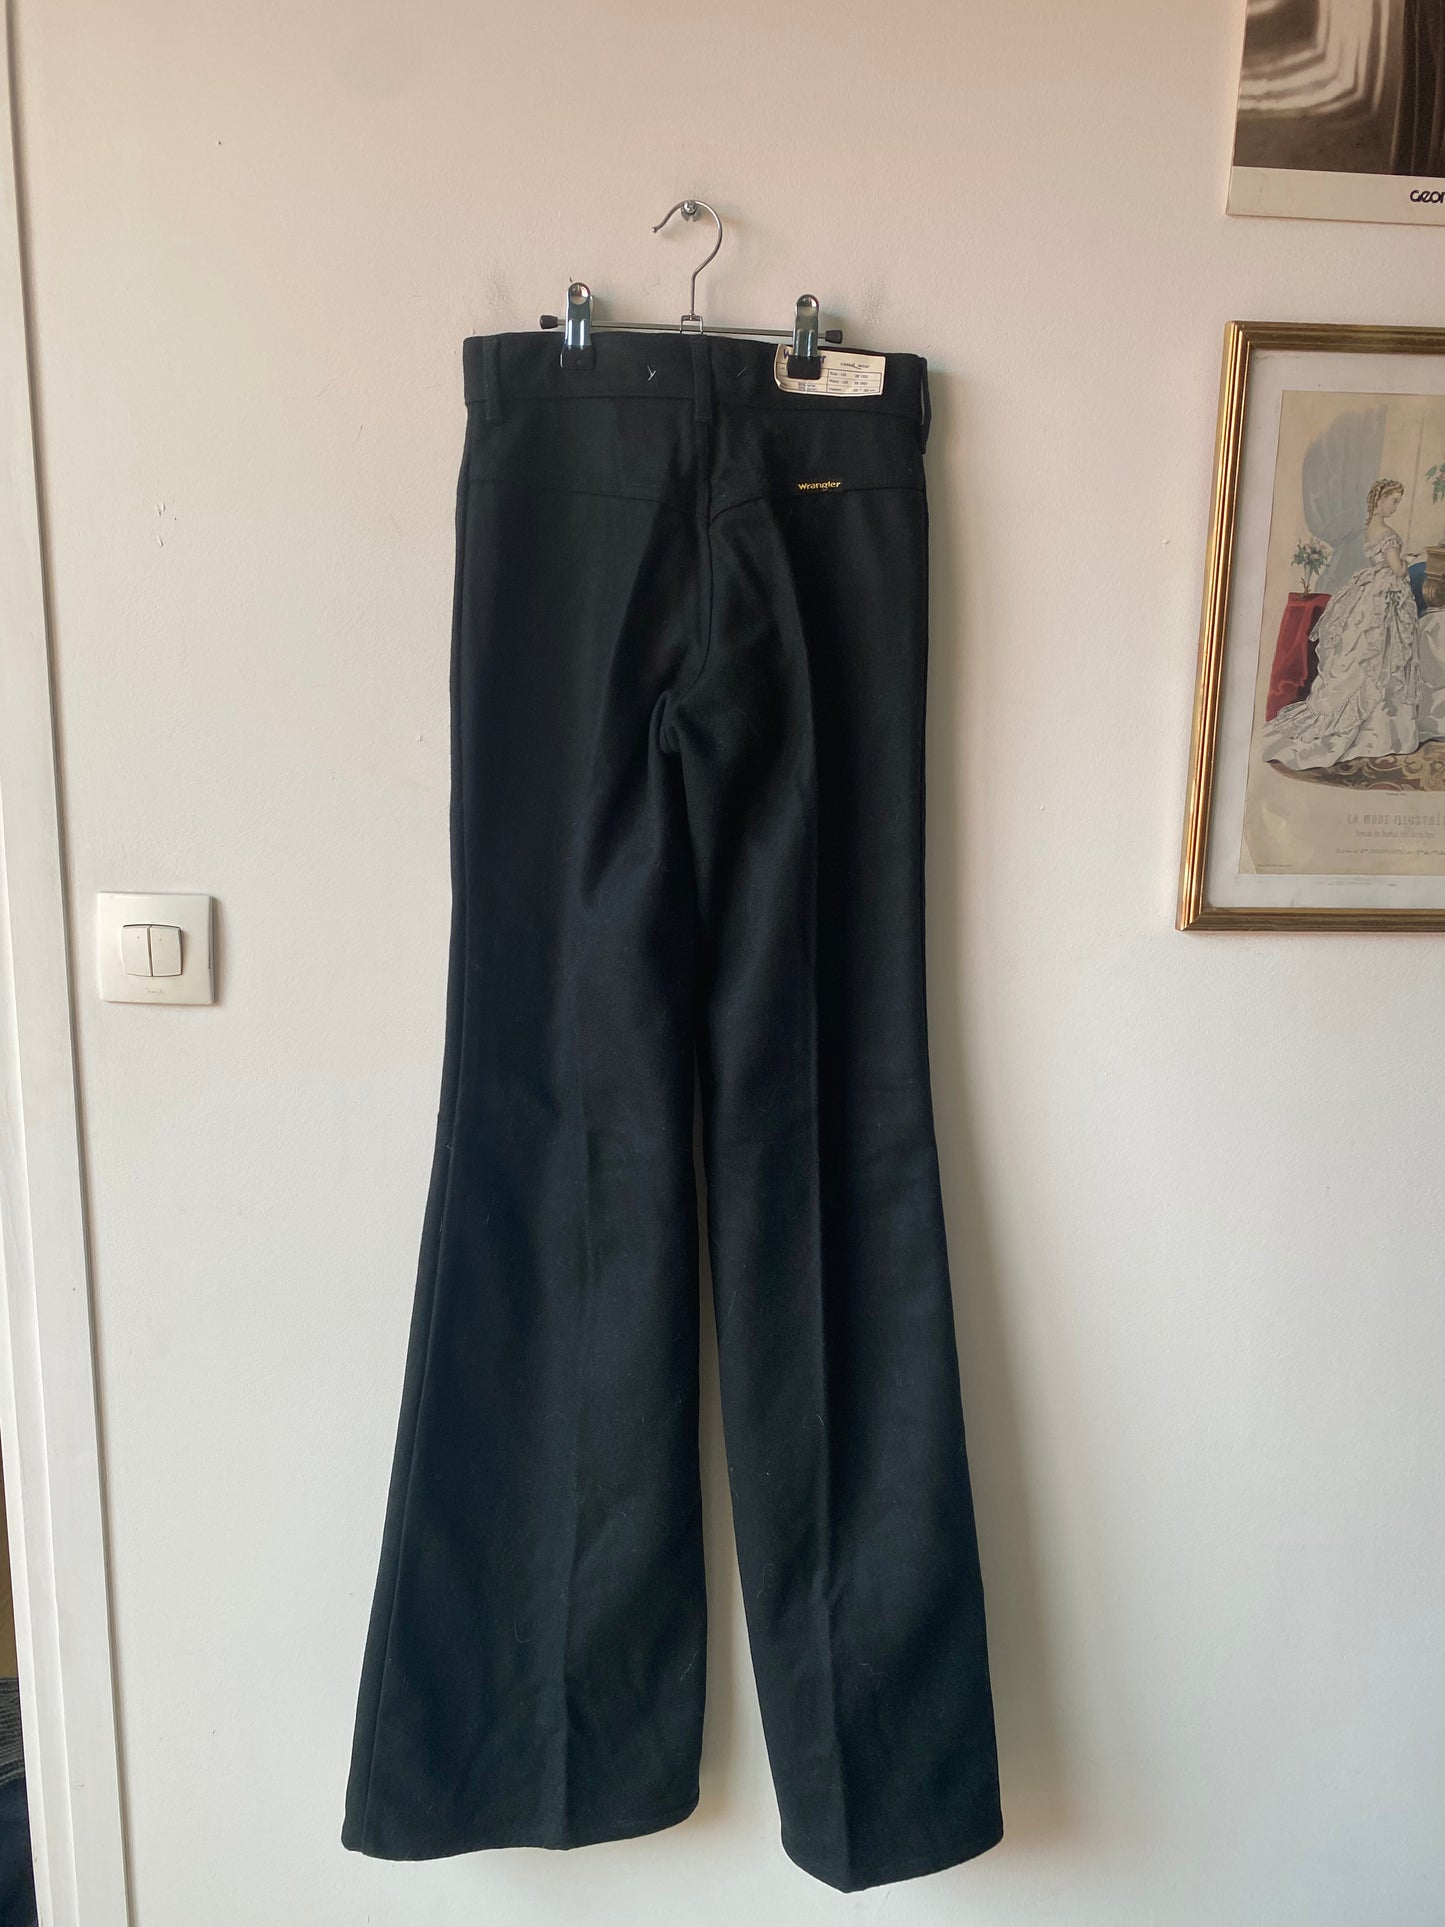 Pantalon noir 70s